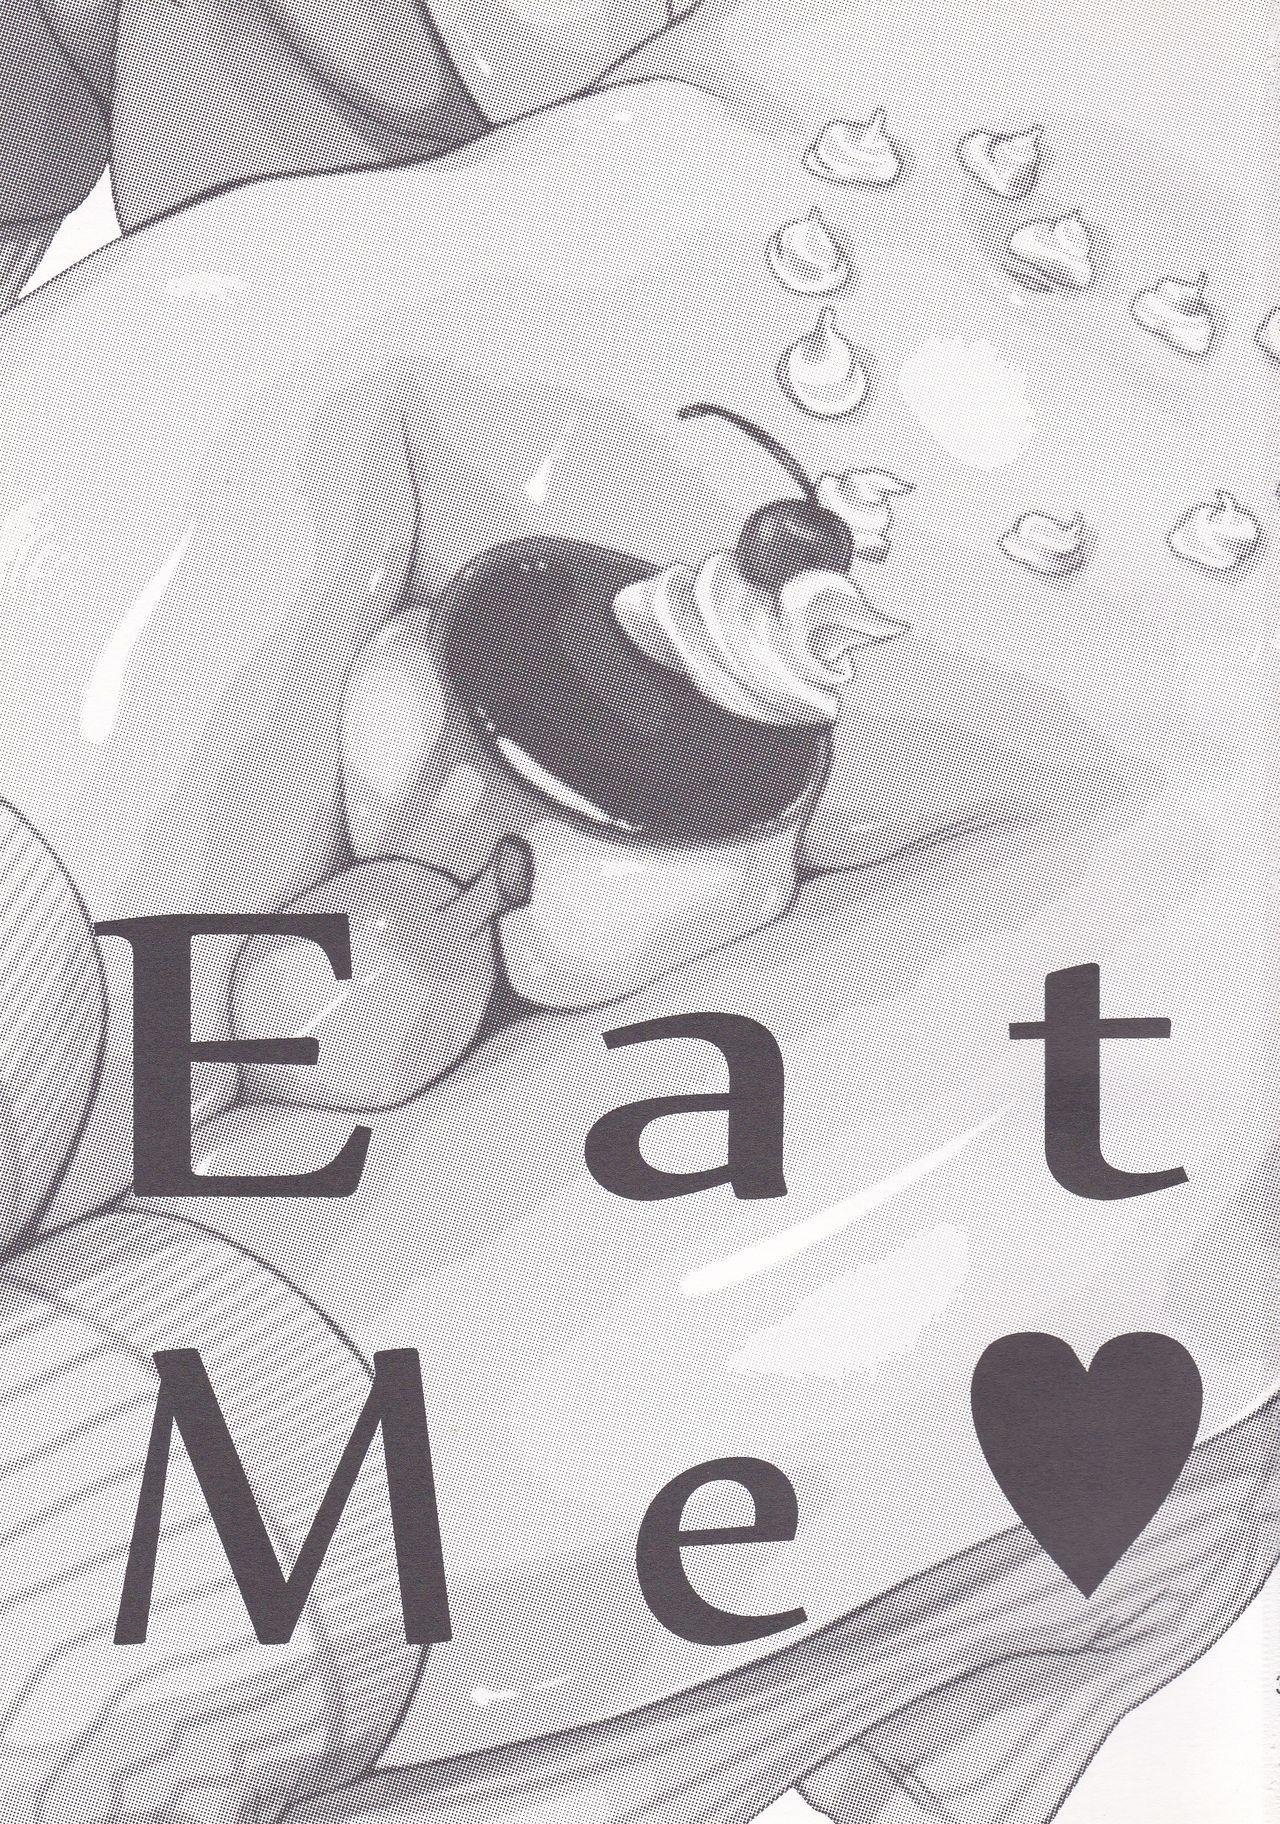 Eat Me 2